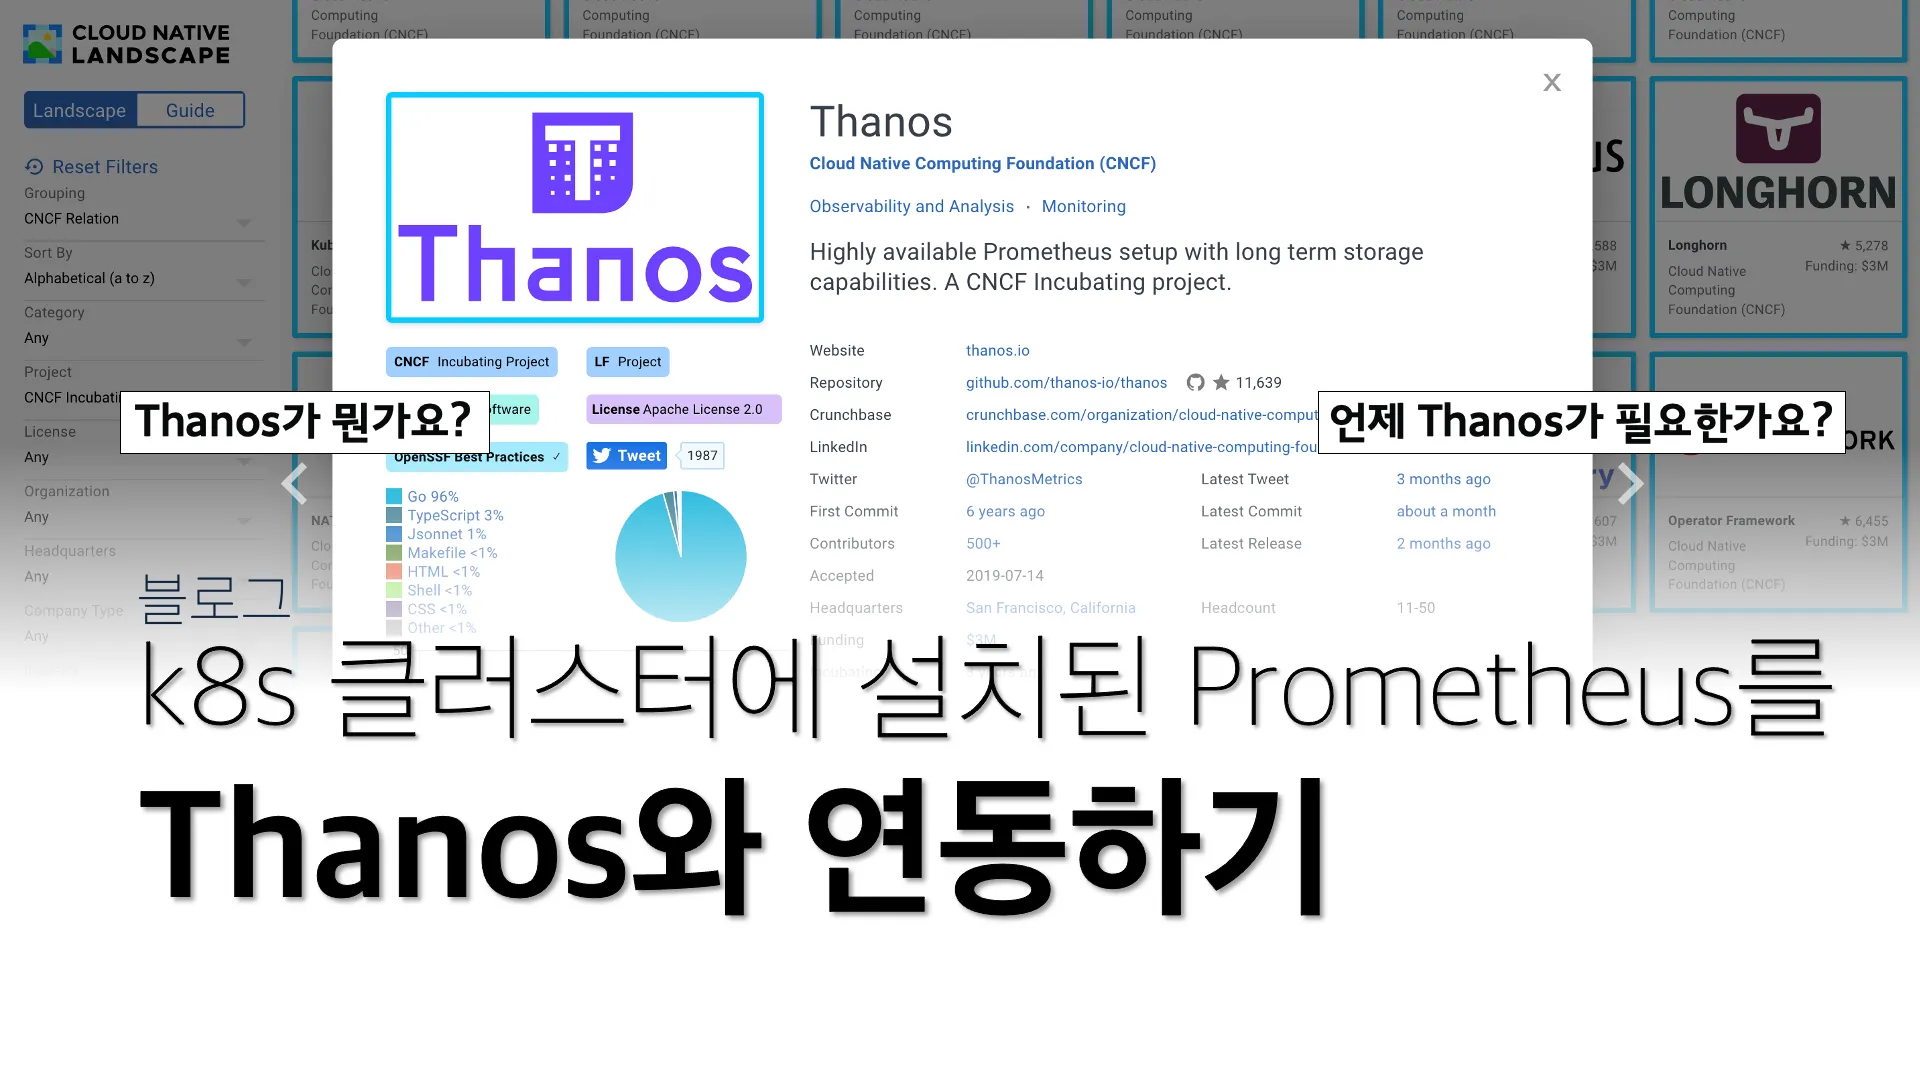 k8s 클러스터에 설치된 Prometheus를 Thanos와 연동하기